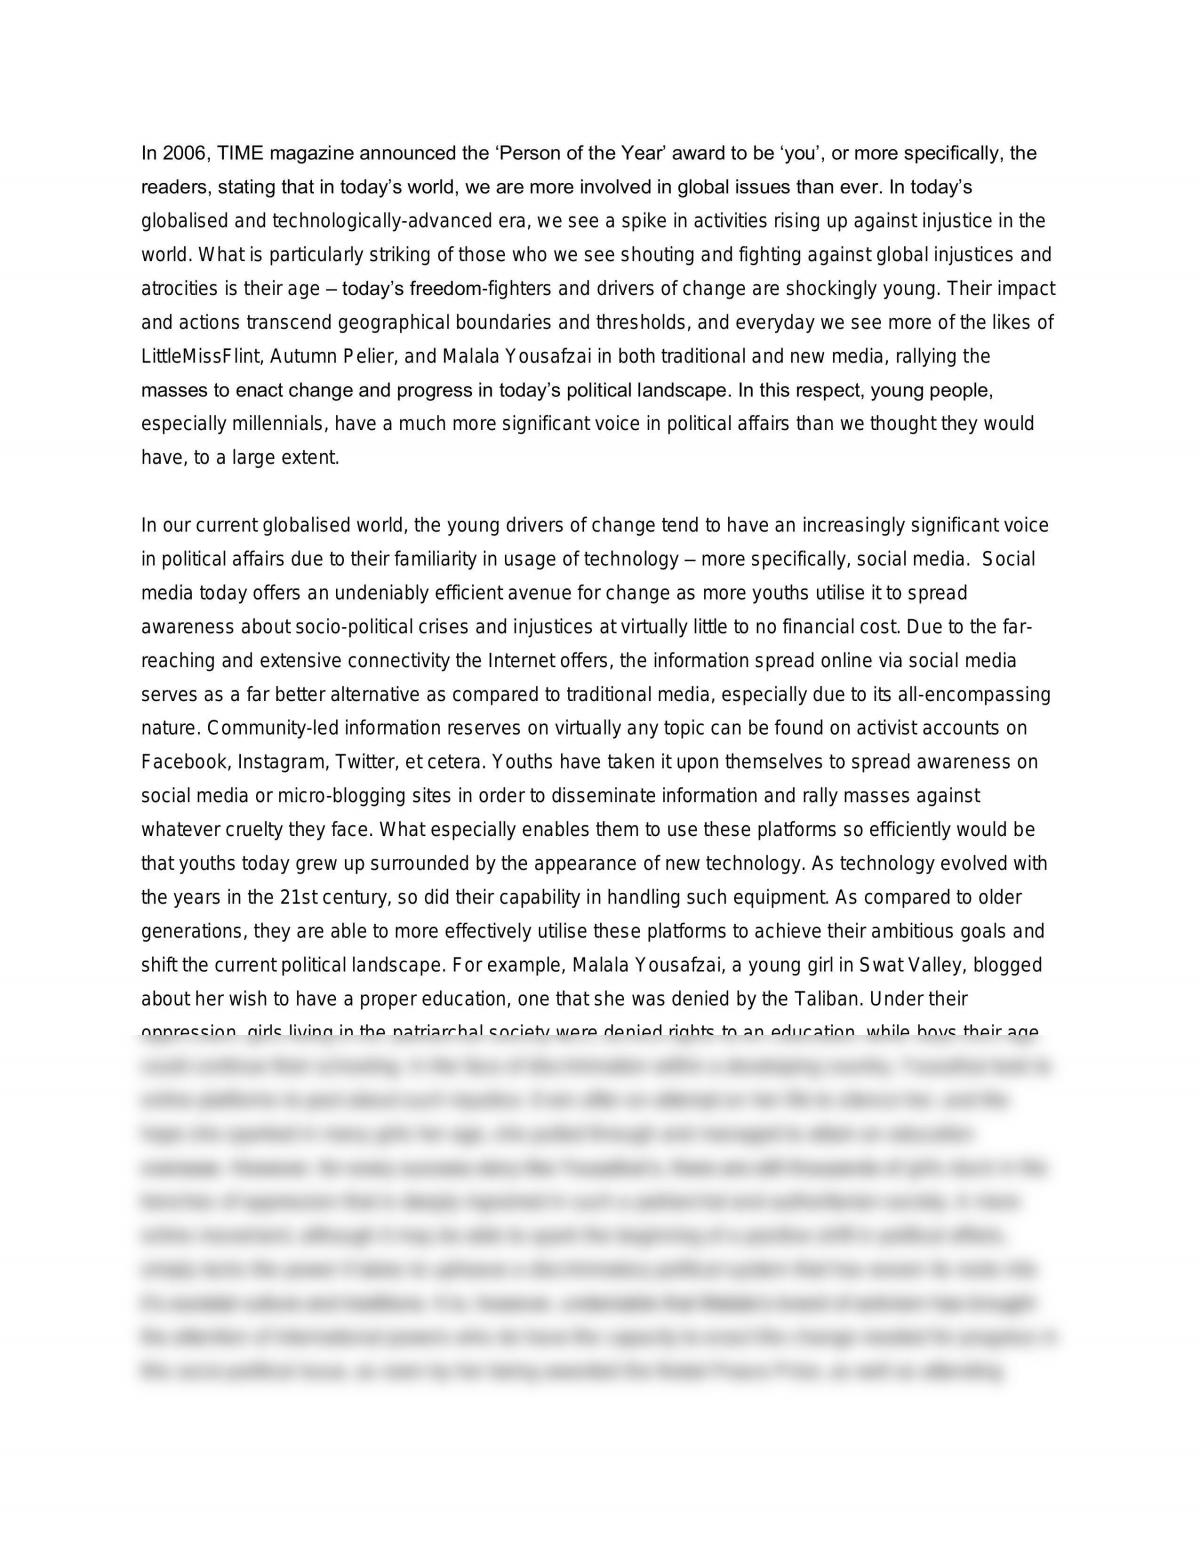 politics and society h1 essay